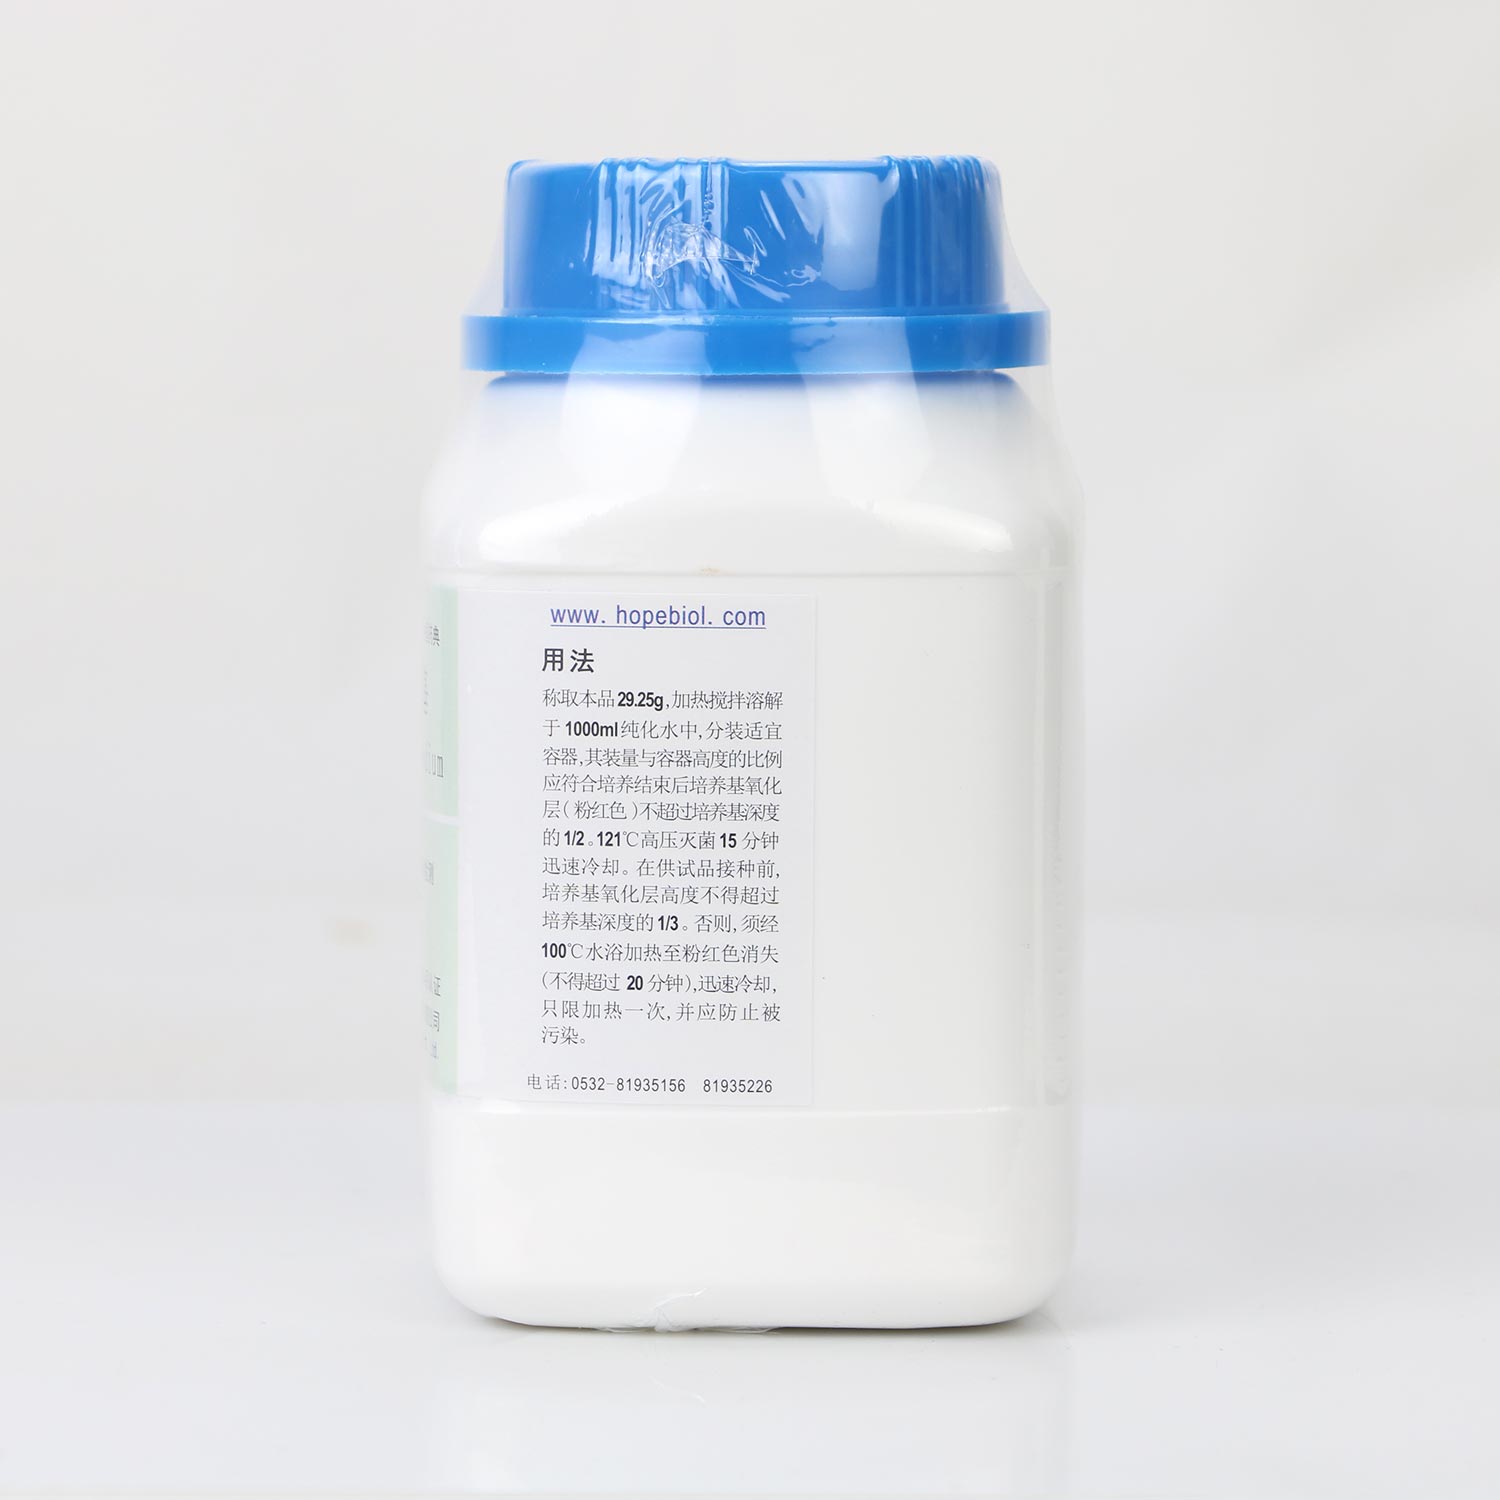 硫乙醇酸盐流体培养基（中国药典）用法